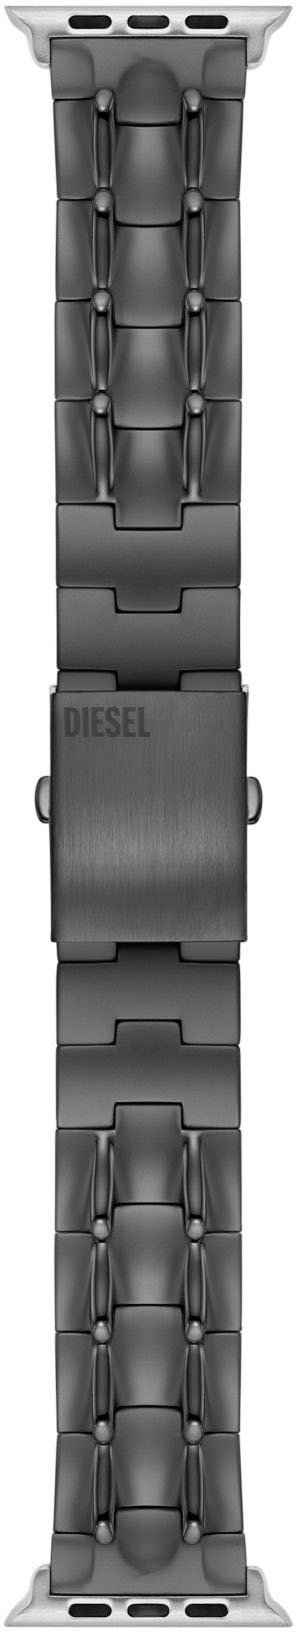 Diesel Smartwatch-Armband Apple Strap, DSS0015, 42 mm, 44 mm, 45 mm, ideal auch als Geschenk